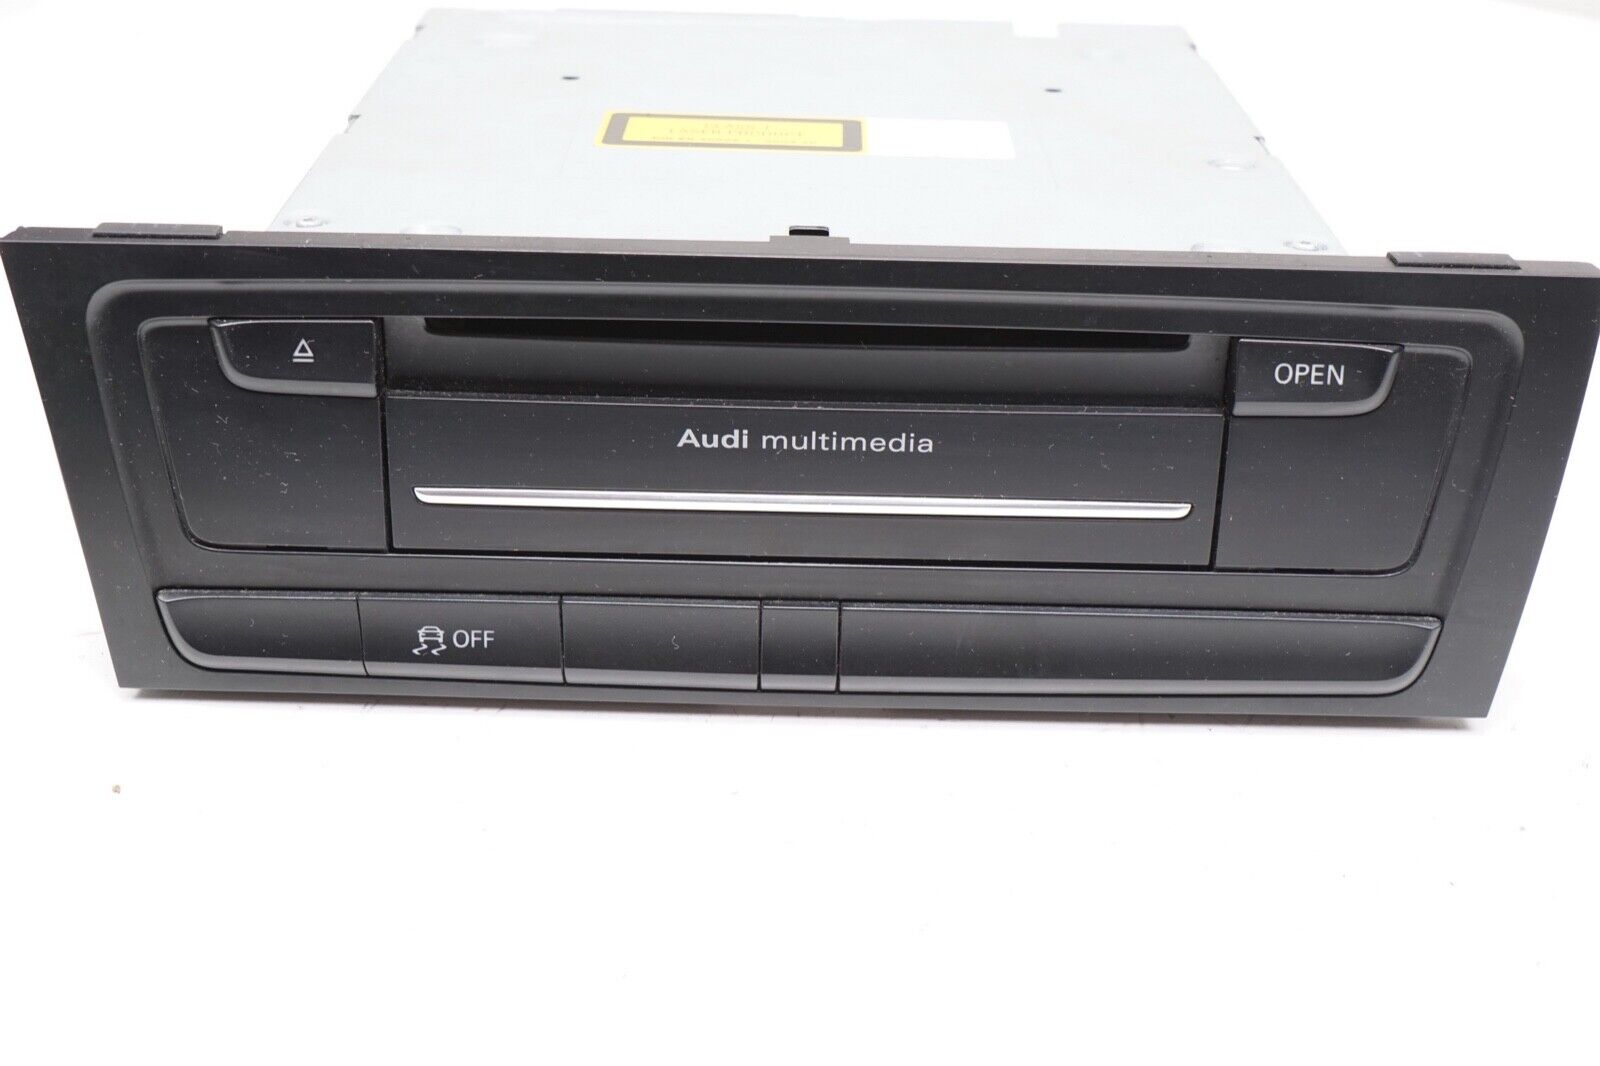 AUDI A5 S5 Q5 MMI Multimedia Control Unit Radio CD DVD Player w/ Navi OEM 2011